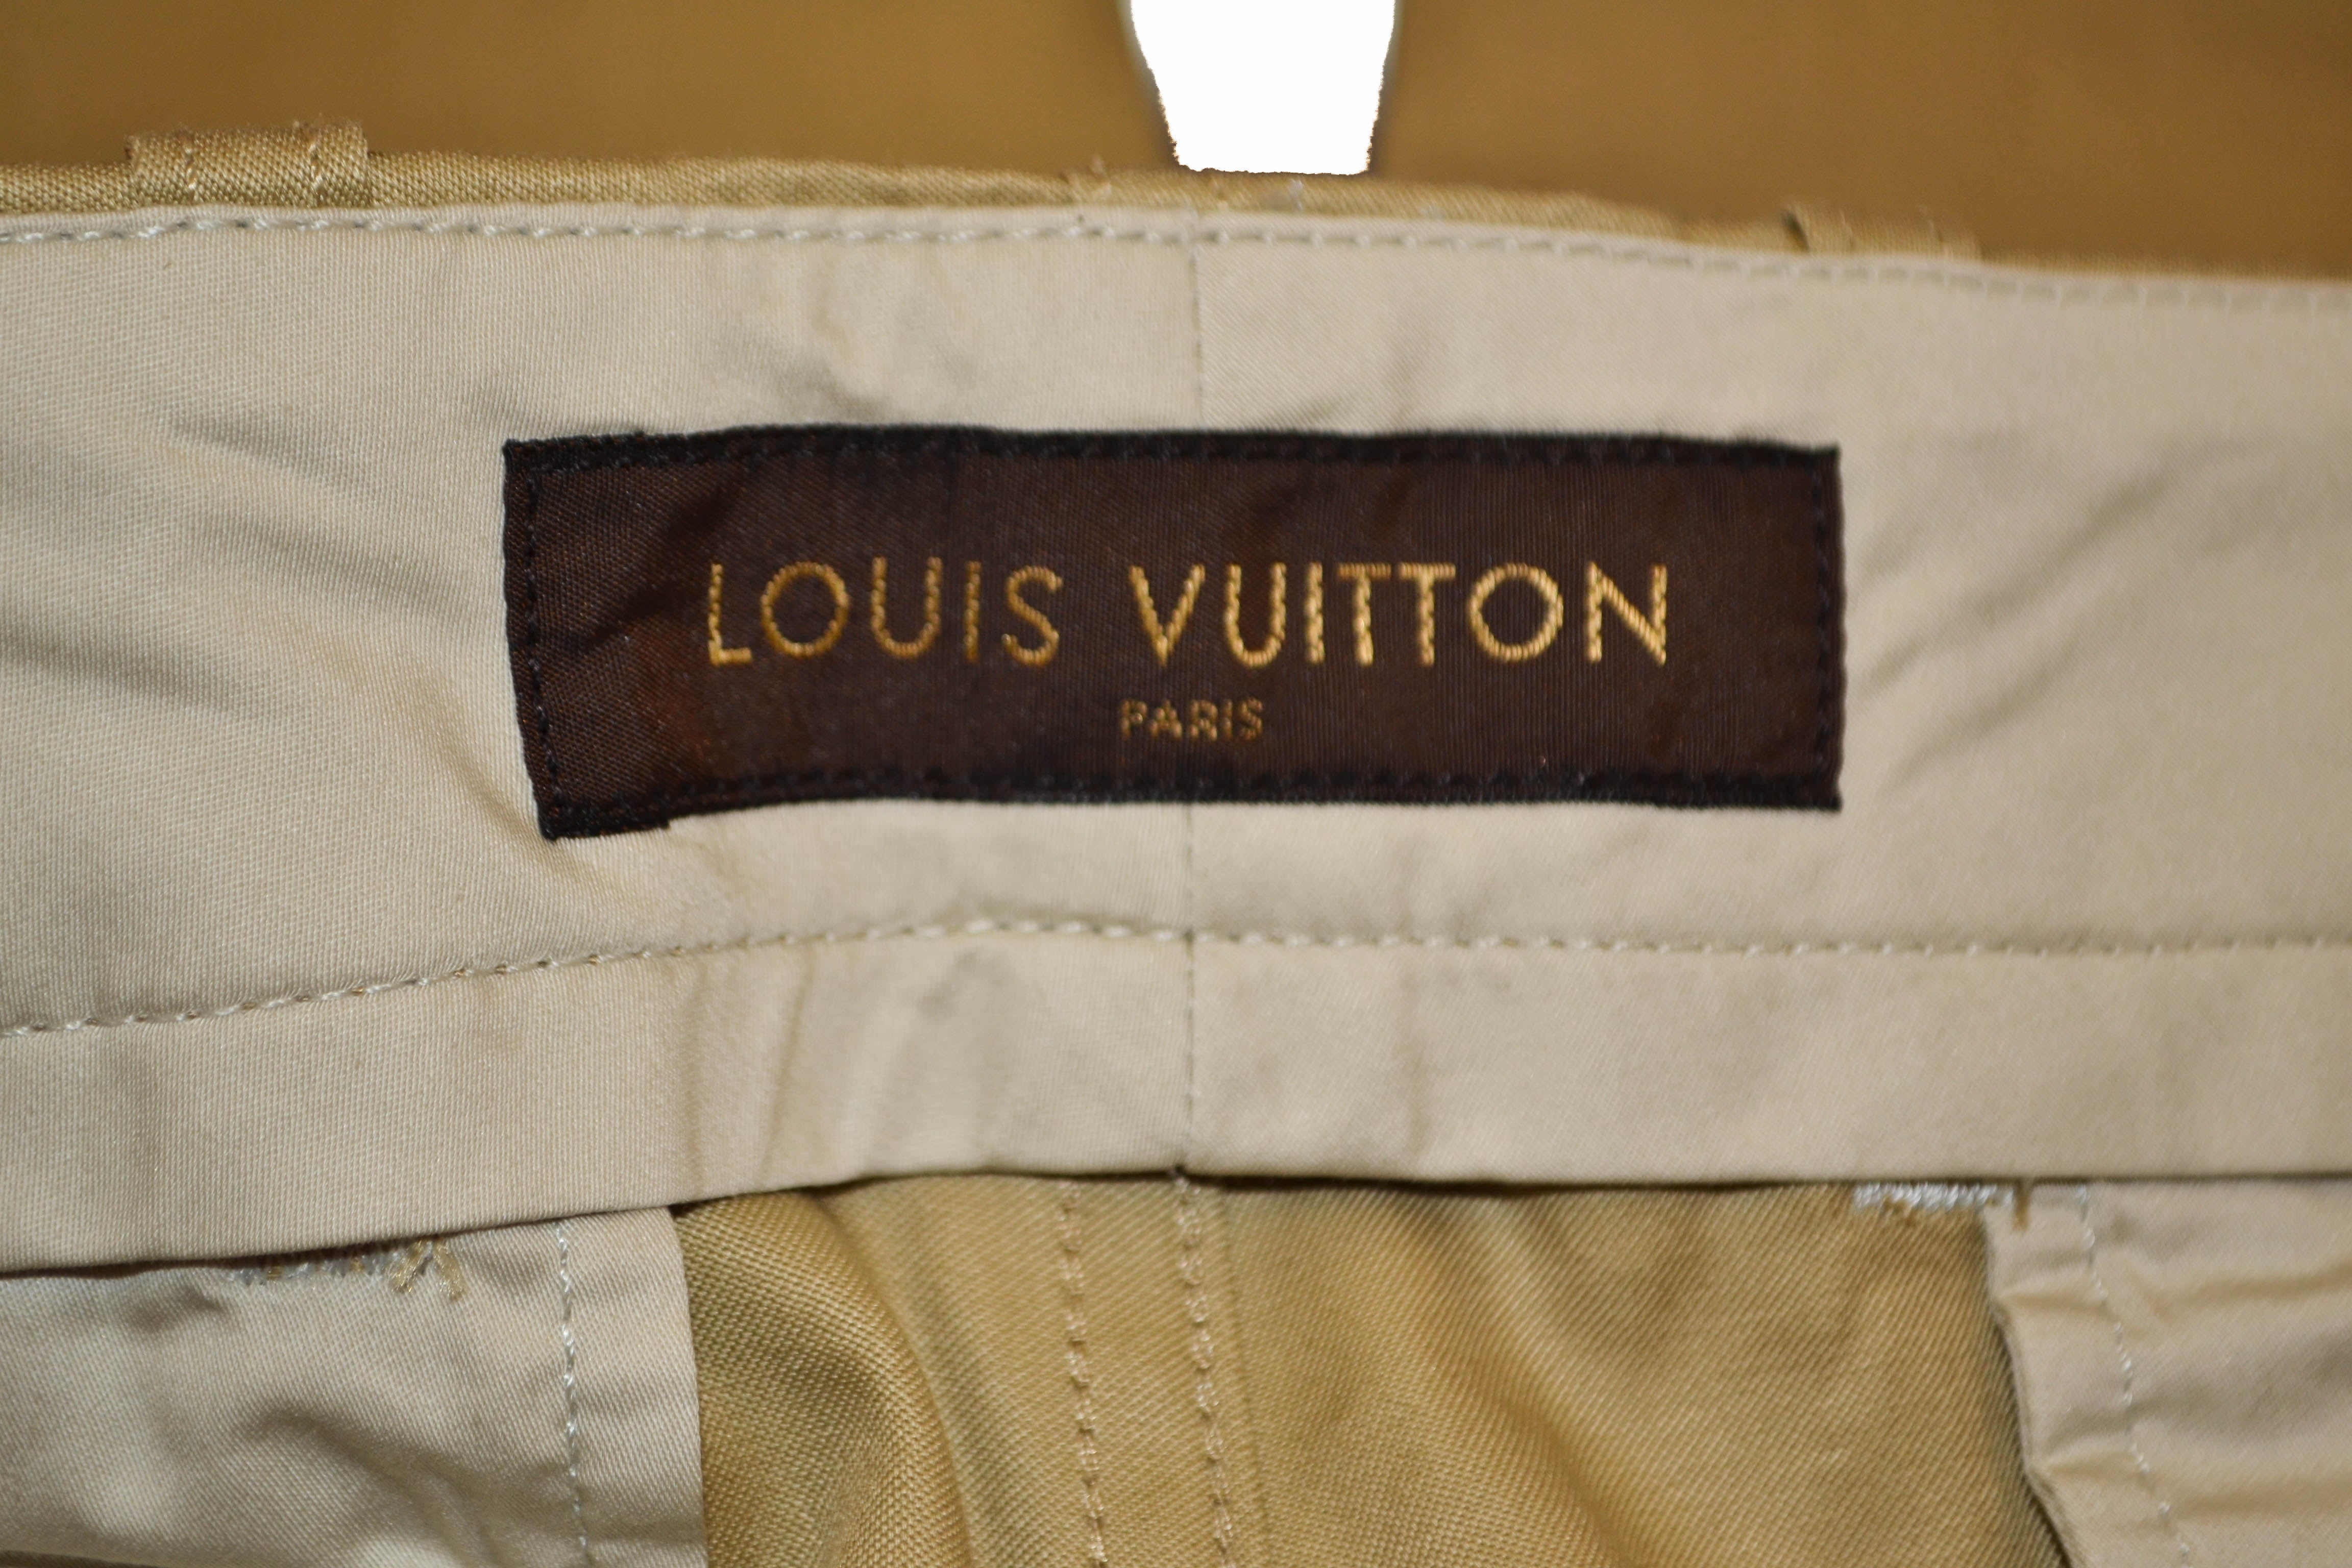 Louis Vuitton trousers, Paris Cotton, buttoned at the …